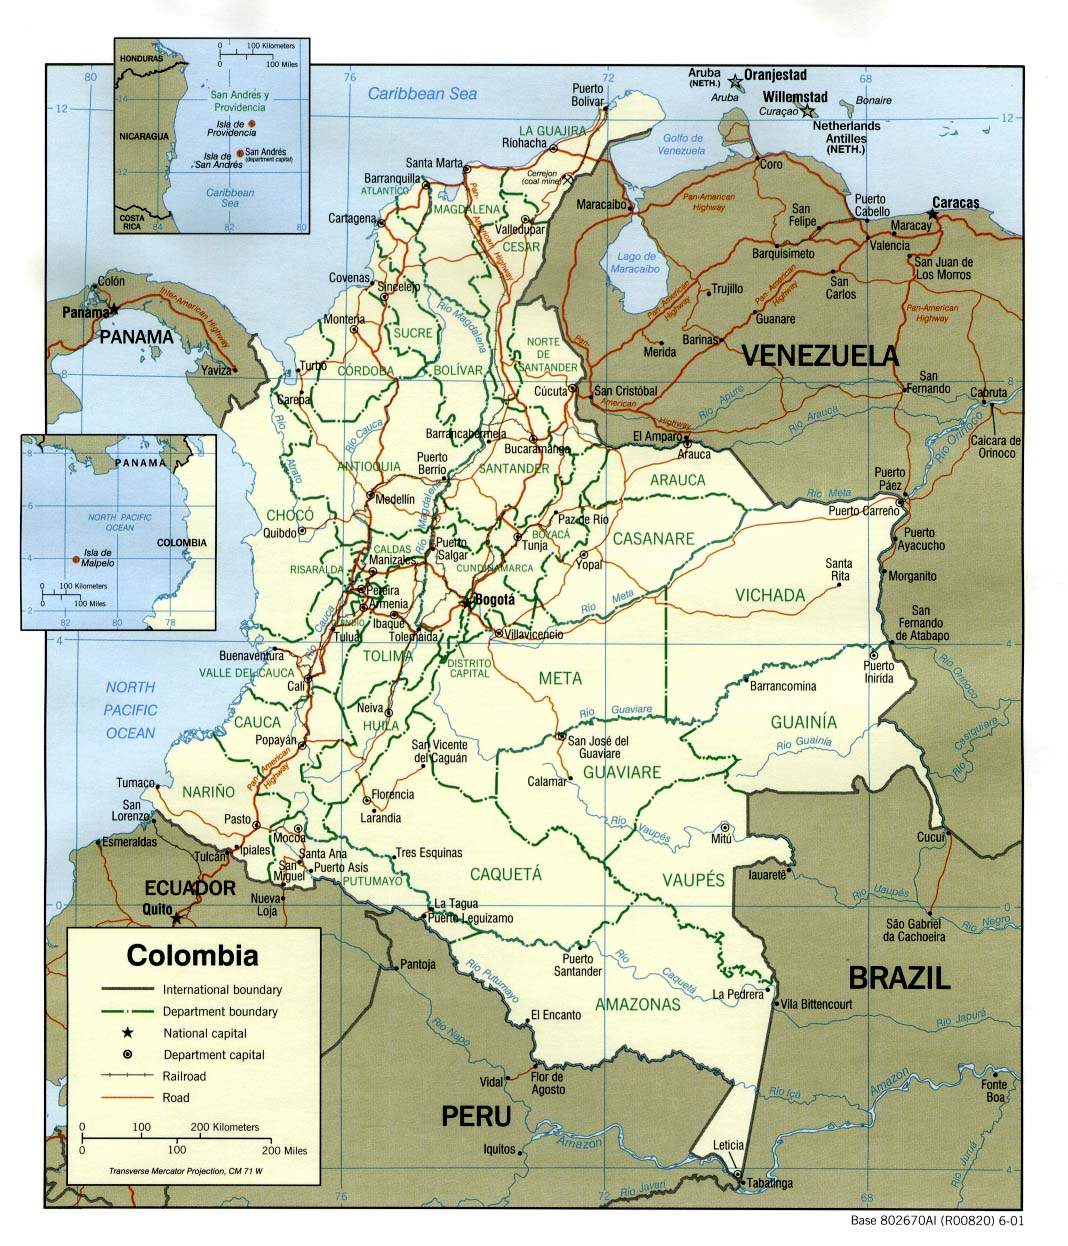 http://www.lib.utexas.edu/maps/americas/colombia_pol_2001.jpg